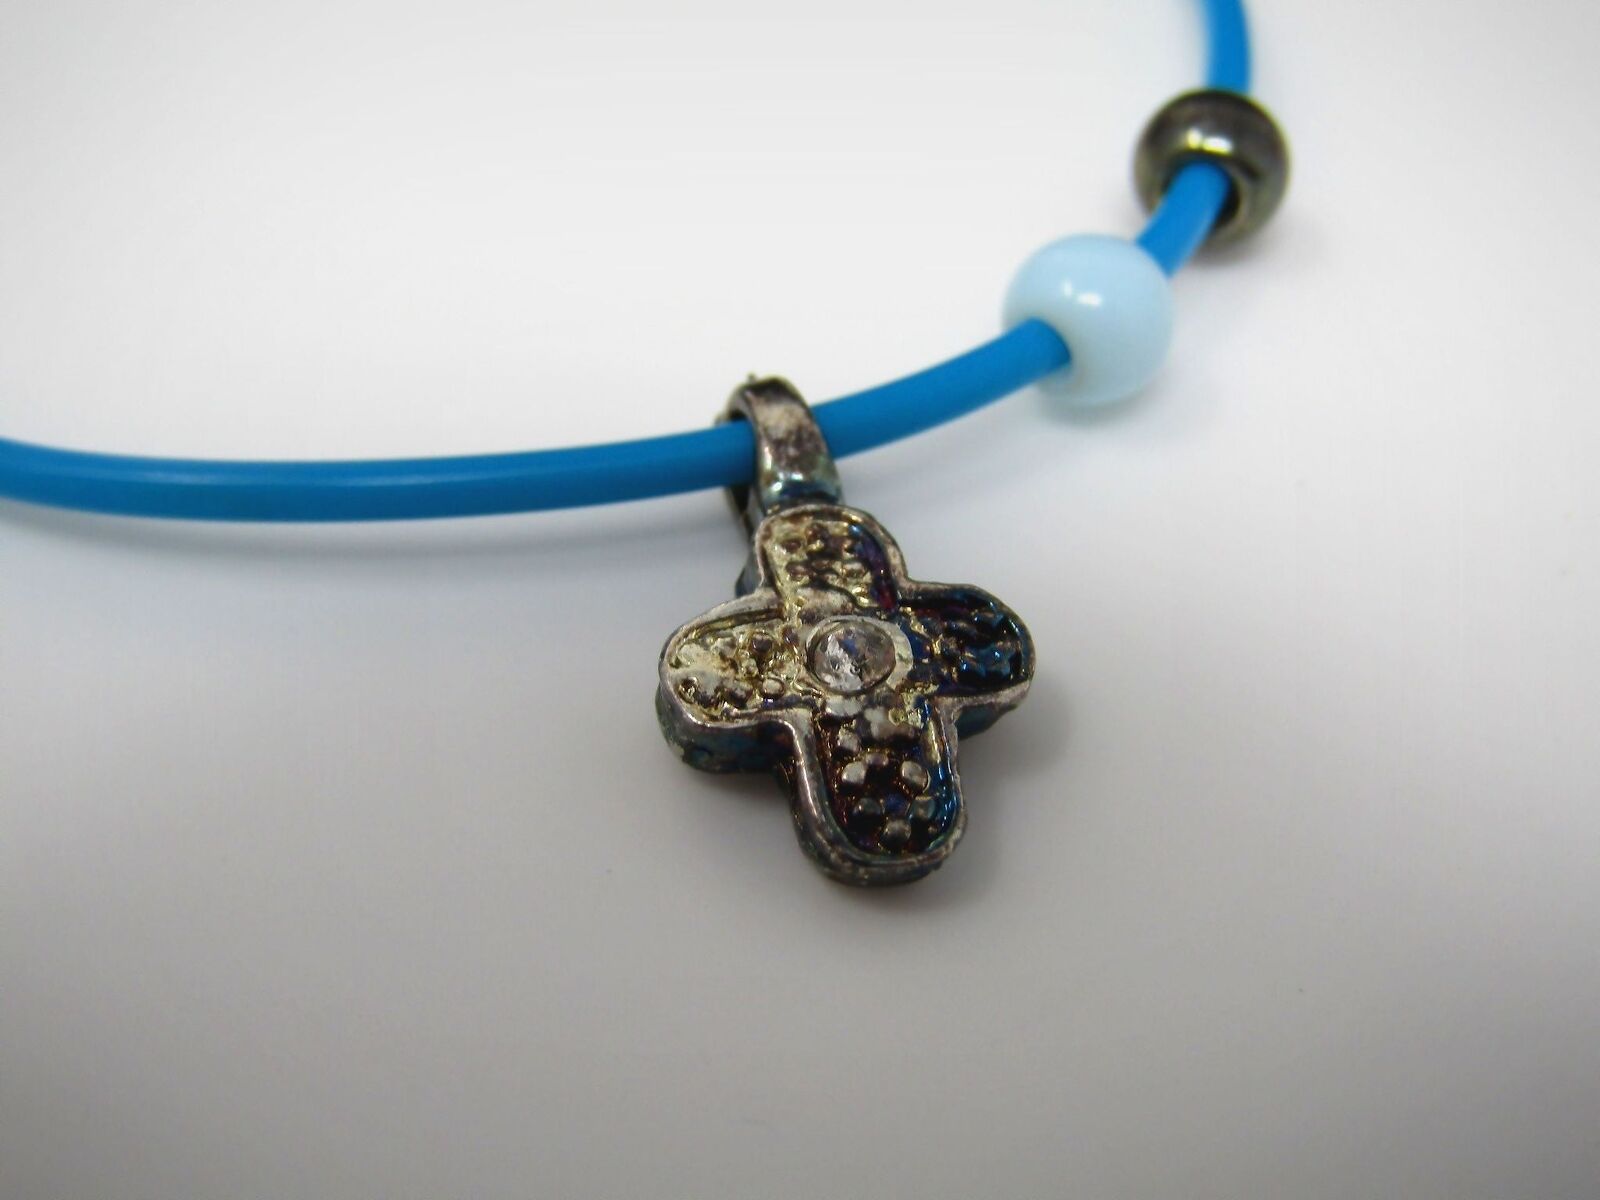 Vintage Christian Bracelet: Blue Adjustable Cross Design